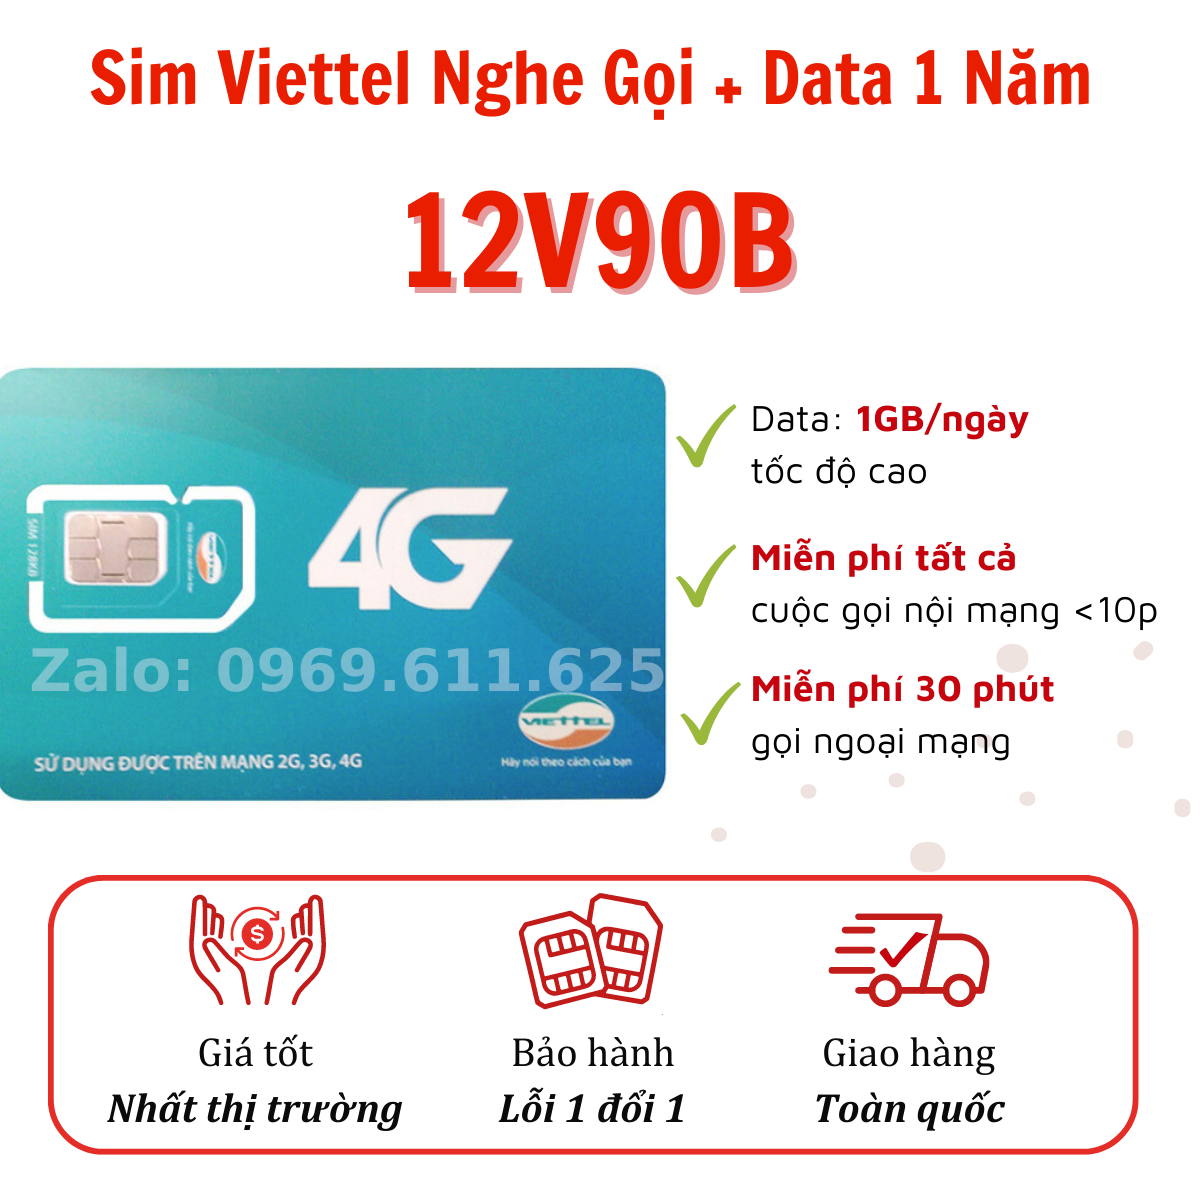 (1 Tỷ Phút Gọi) Sim 4G Viettel 10 số vào mạng trọn gói 1 năm- Tặng ngay 30GB/tháng Nghe gọi tỷ phút xài cả năm không nạp tiền .FREESHIP - CHƯA KÍCH HOẠT.